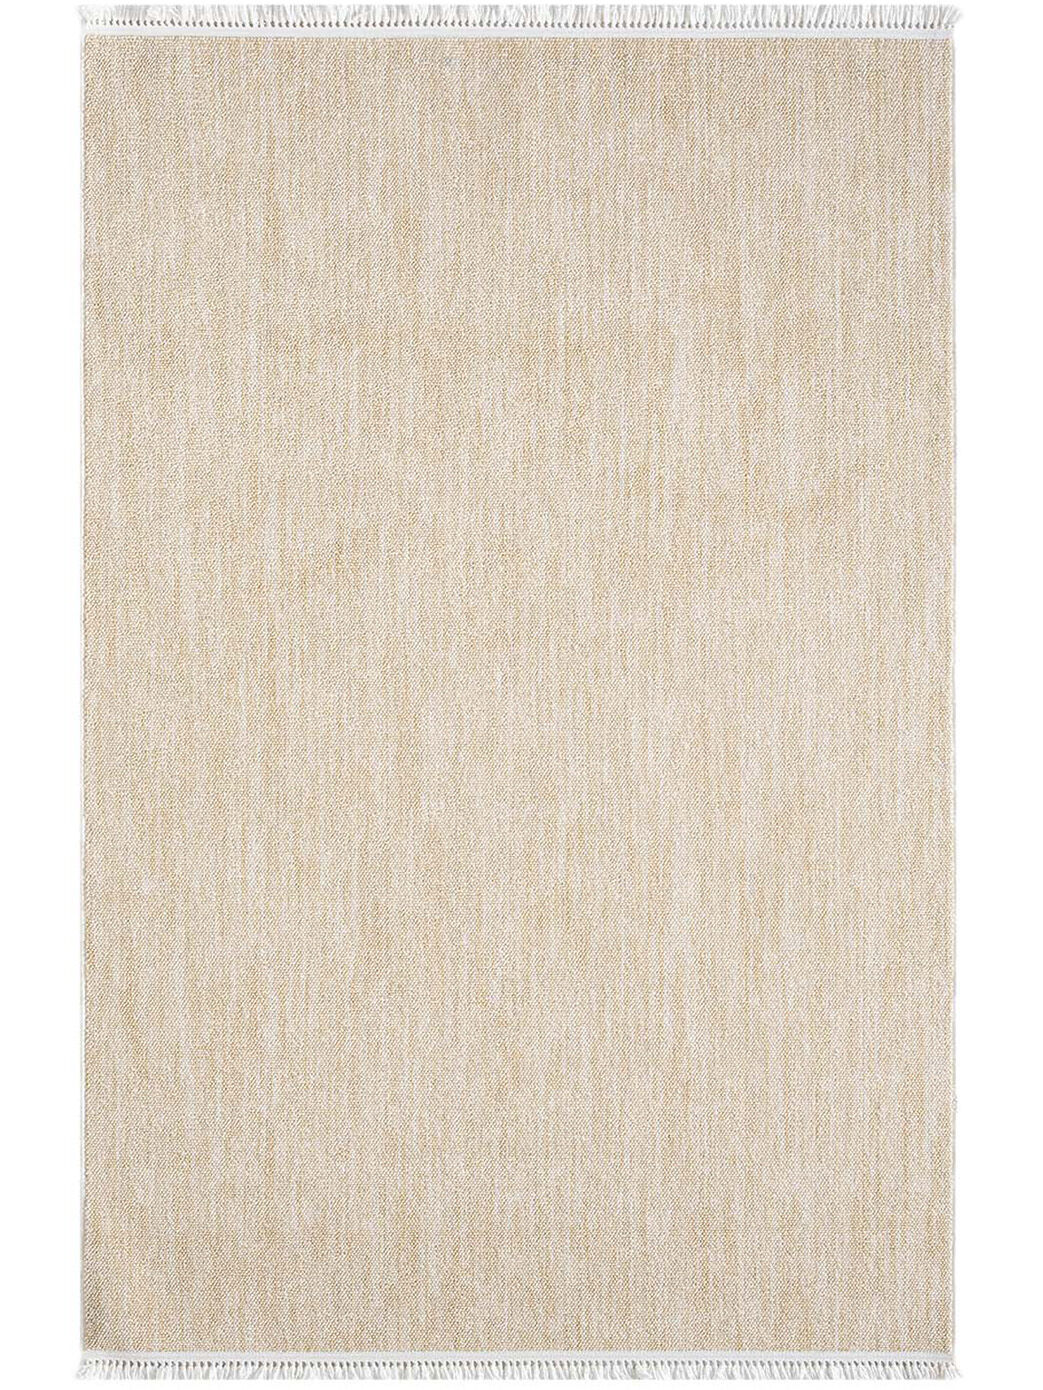 Teppich Moderno Gelb 2511 160x230 1